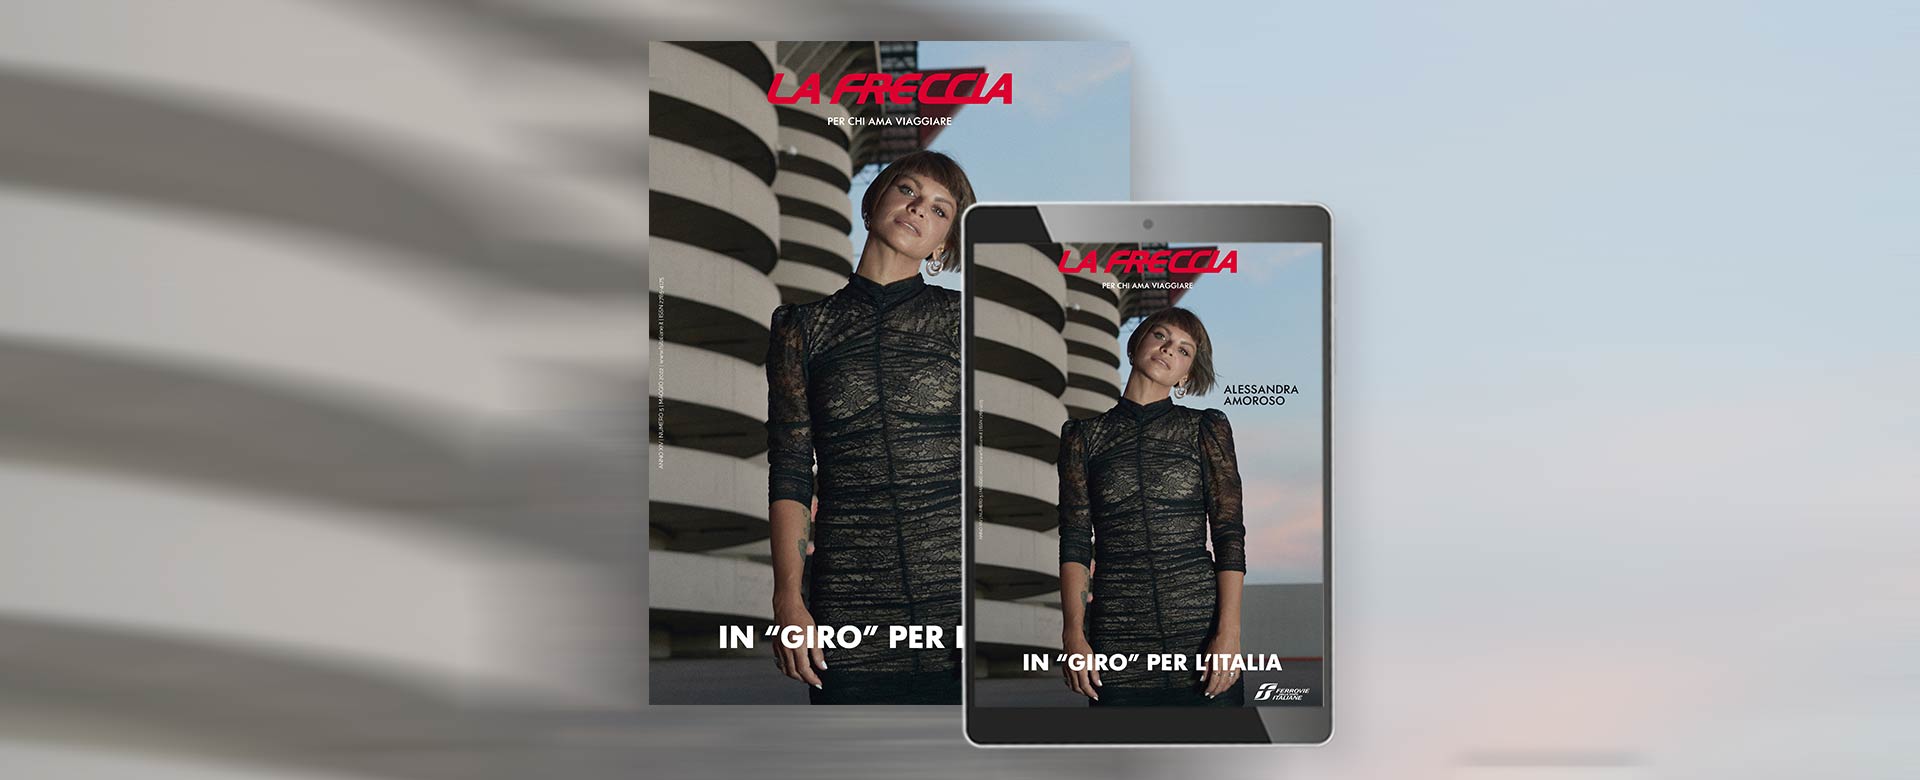 La cover de La Freccia di maggio 2022 con Alessandra Amoroso